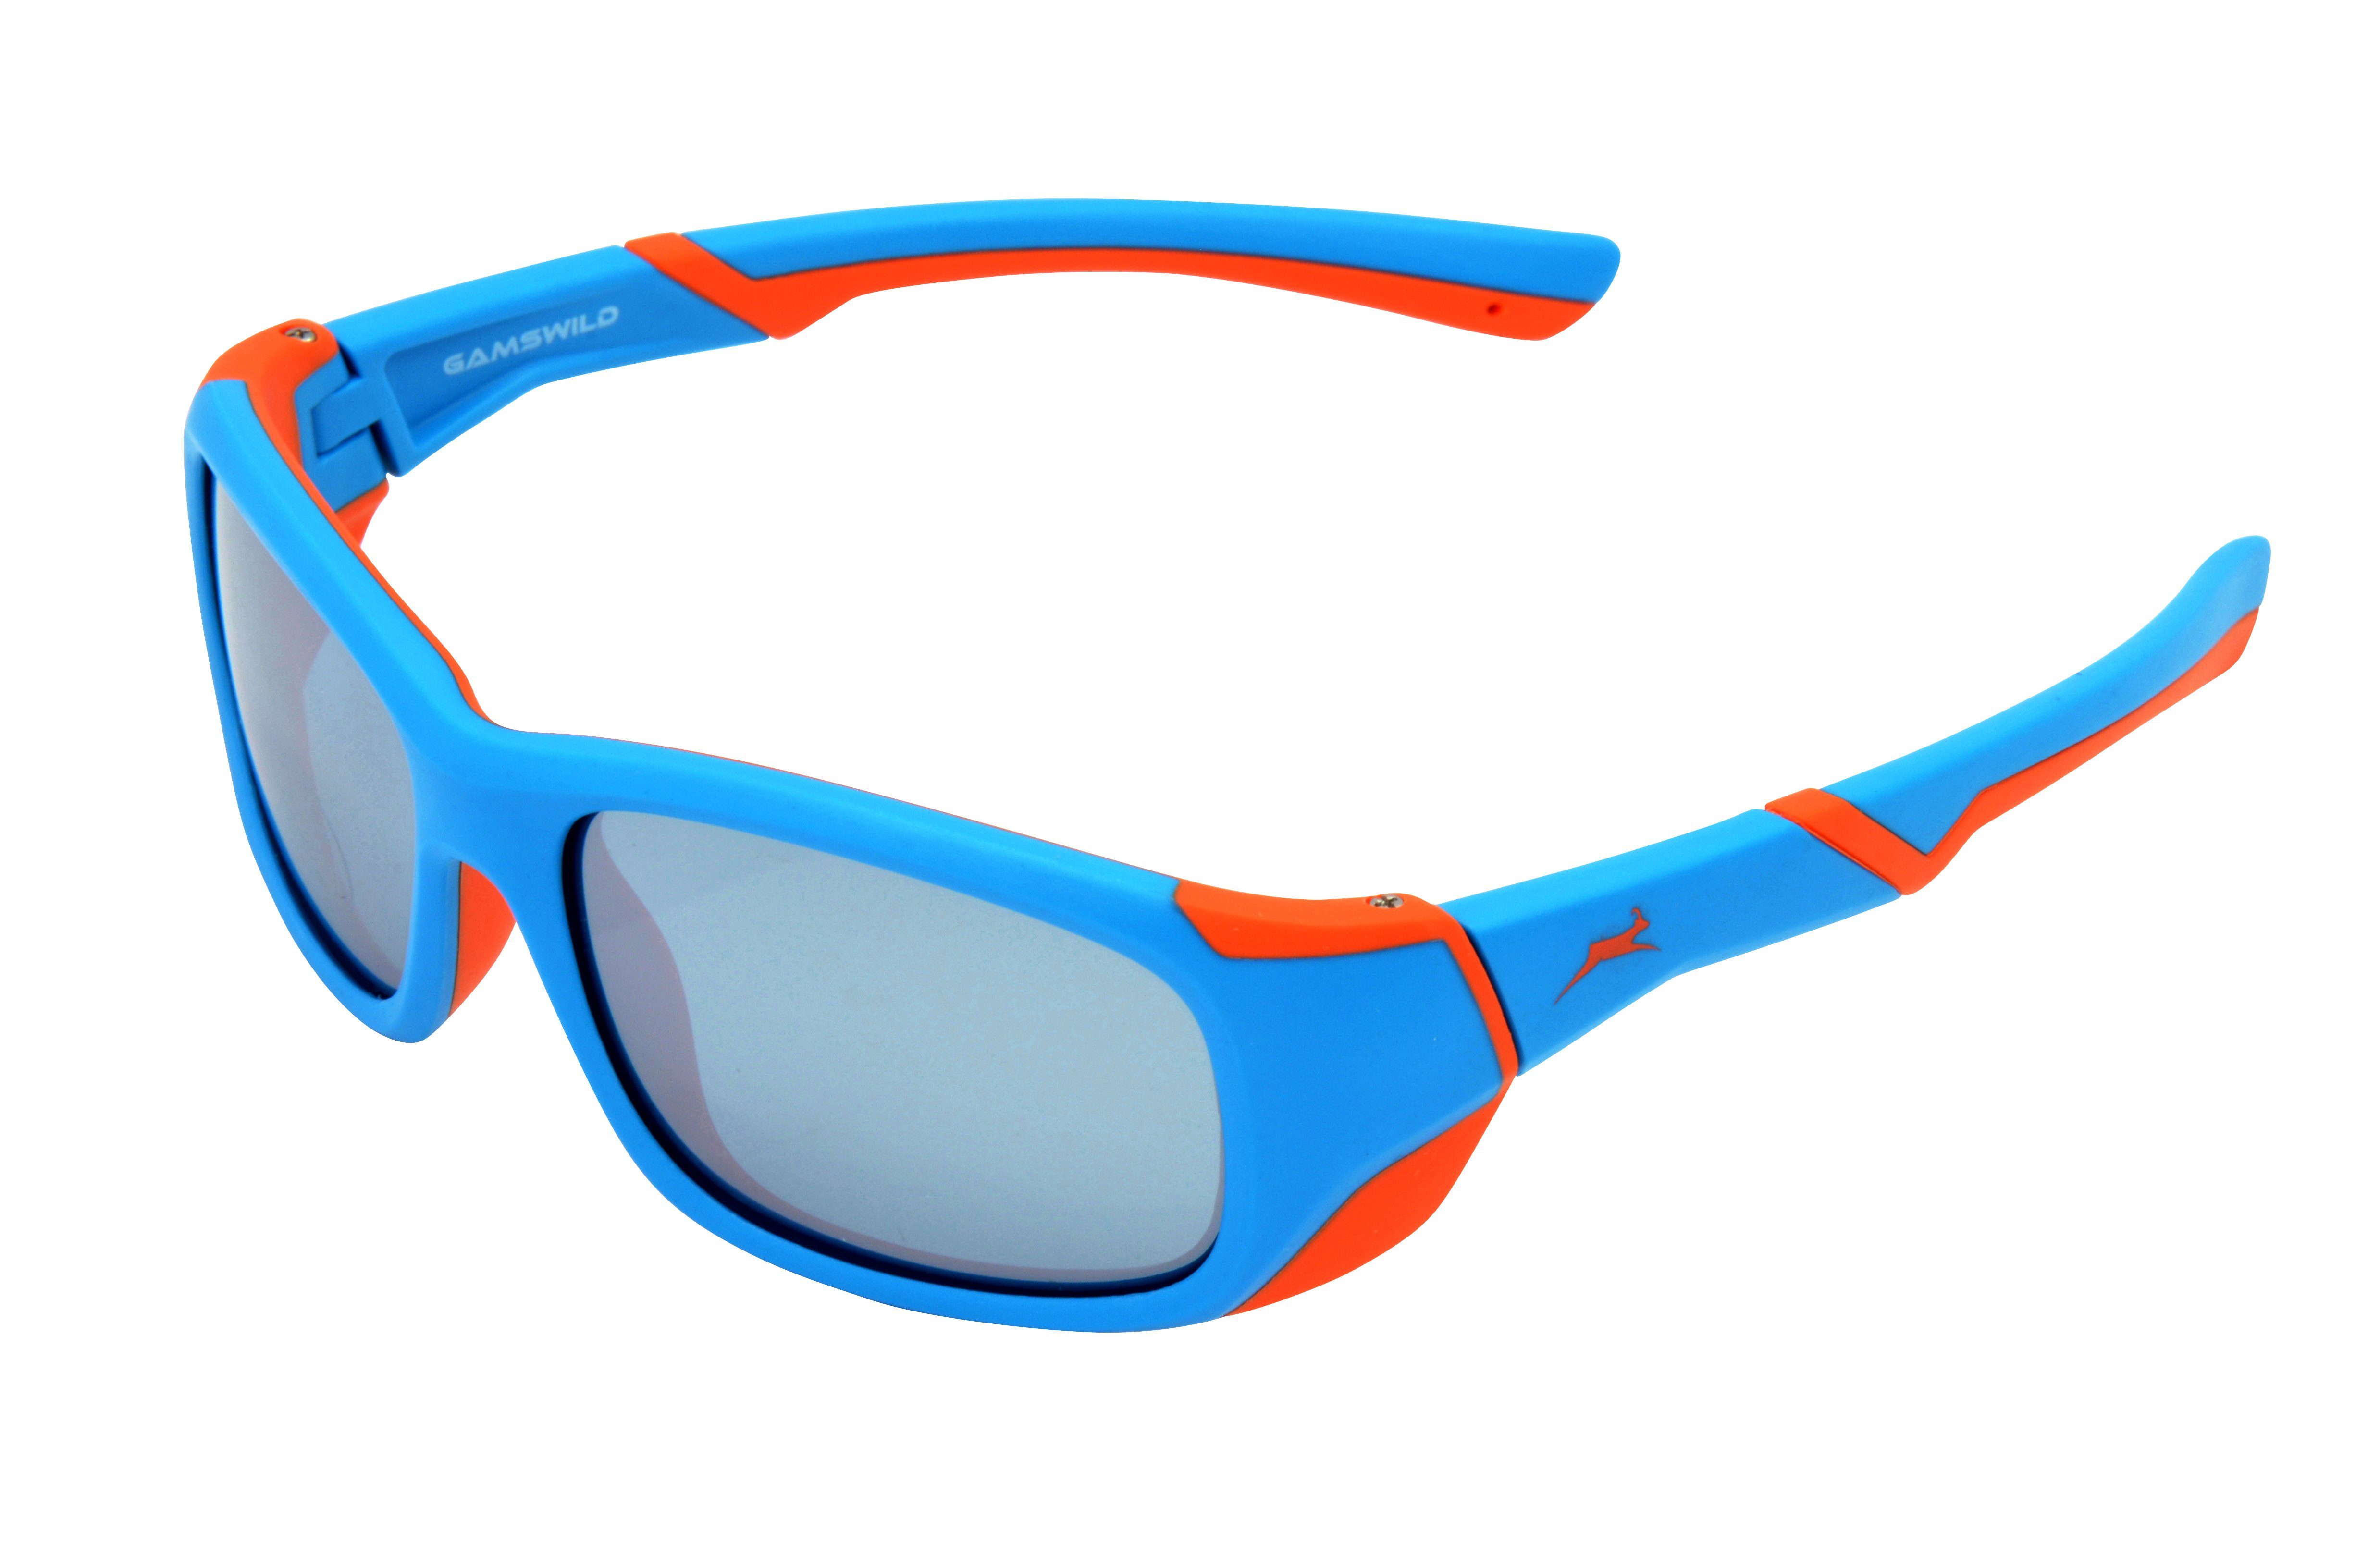 Gamswild Sonnenbrille WJ5119 GAMSKIDS Kinderbrille 6-12 Jahre Jugendbrille Mädchen Jungen Unisex, blau - orange, grün - grau, dunkelrot -orange super flexible Bügel